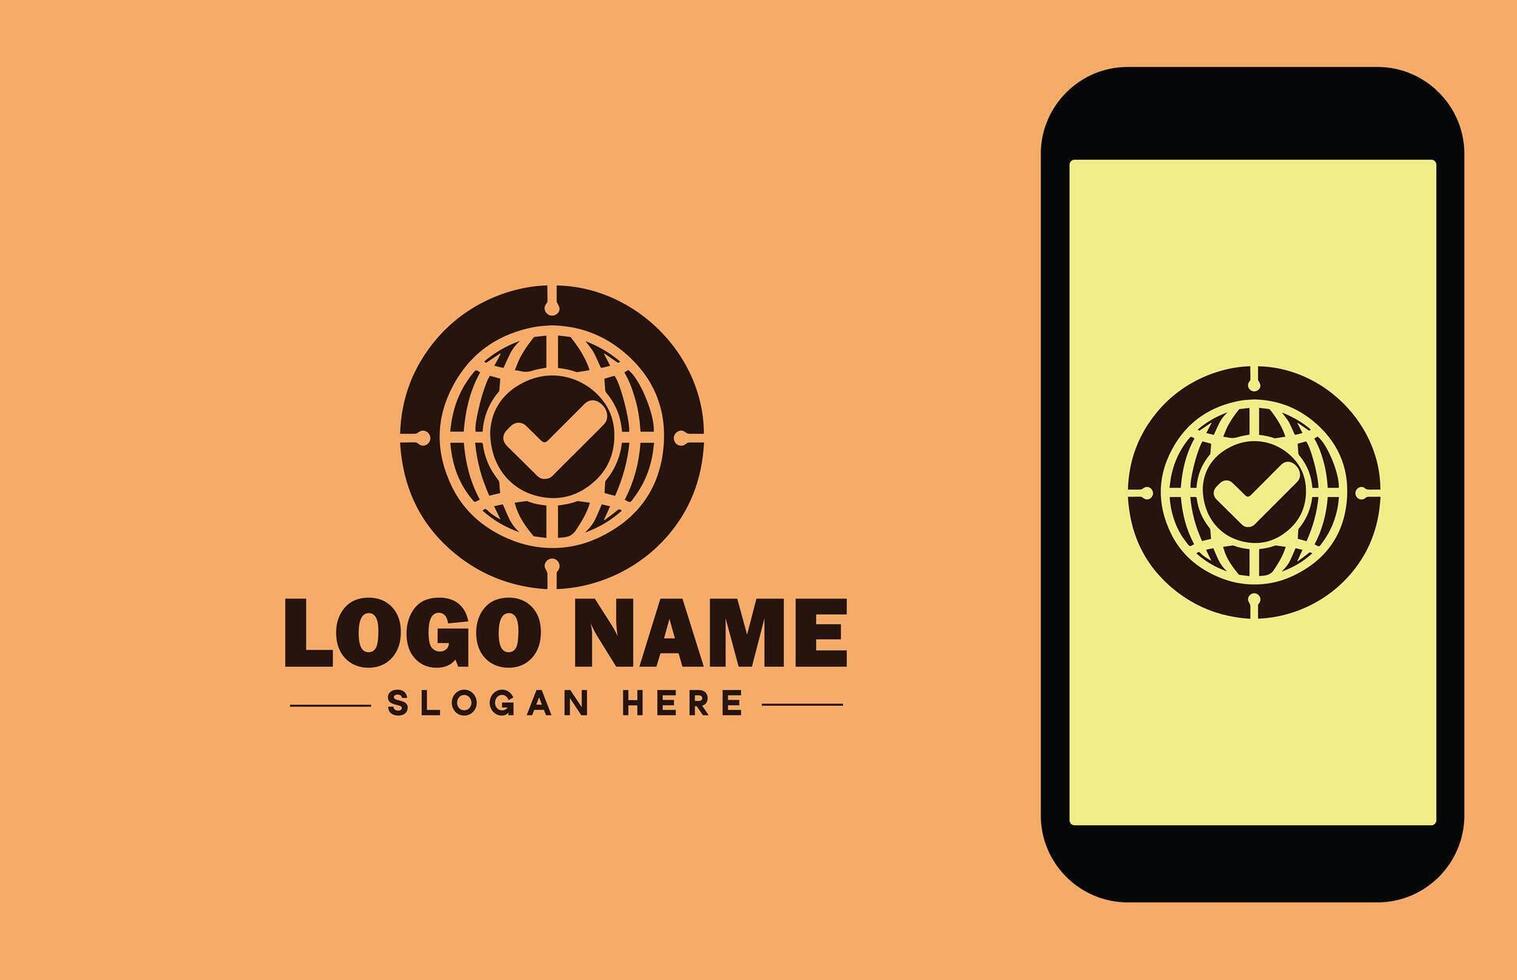 coche logo icône vecteur art graphique pour affaires marque app icône vérifier marque droite symbole cocher D'accord correct logo modèle